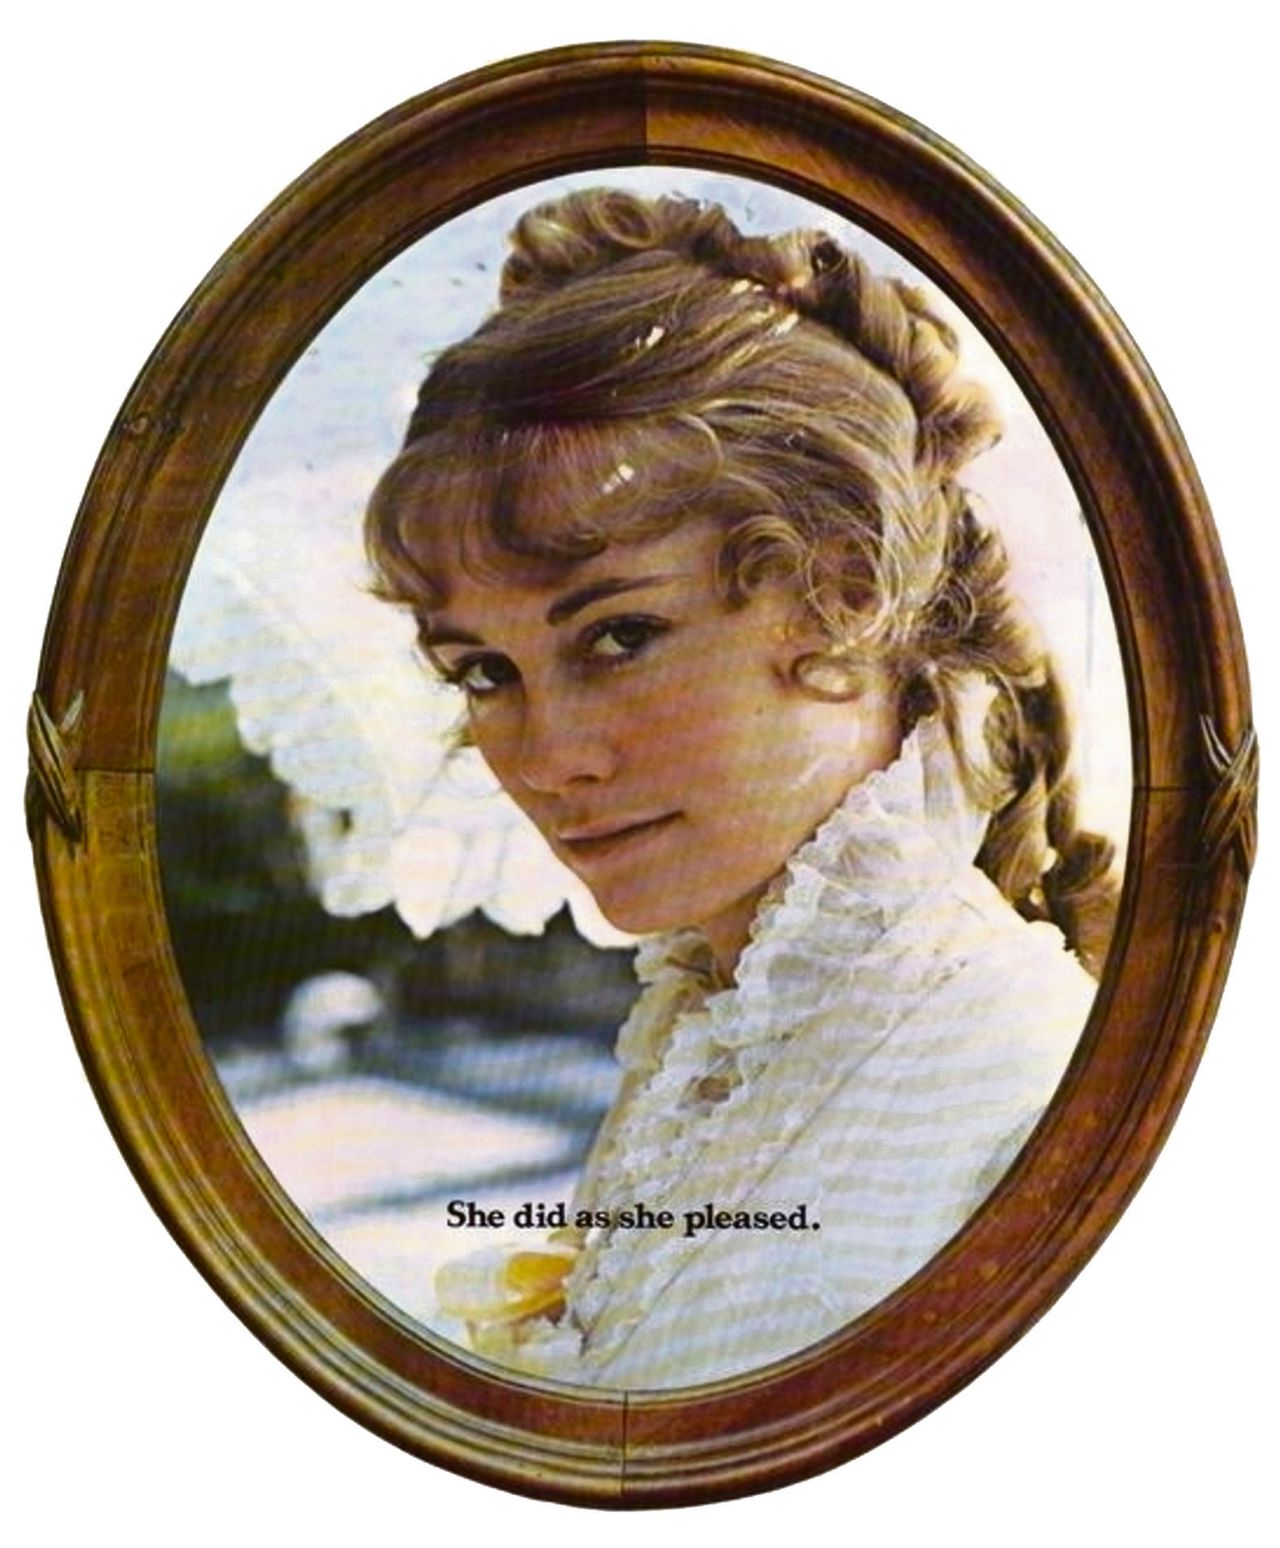 Affiche van de film Daisy Miller van Peter Bogdanovich uit 1974